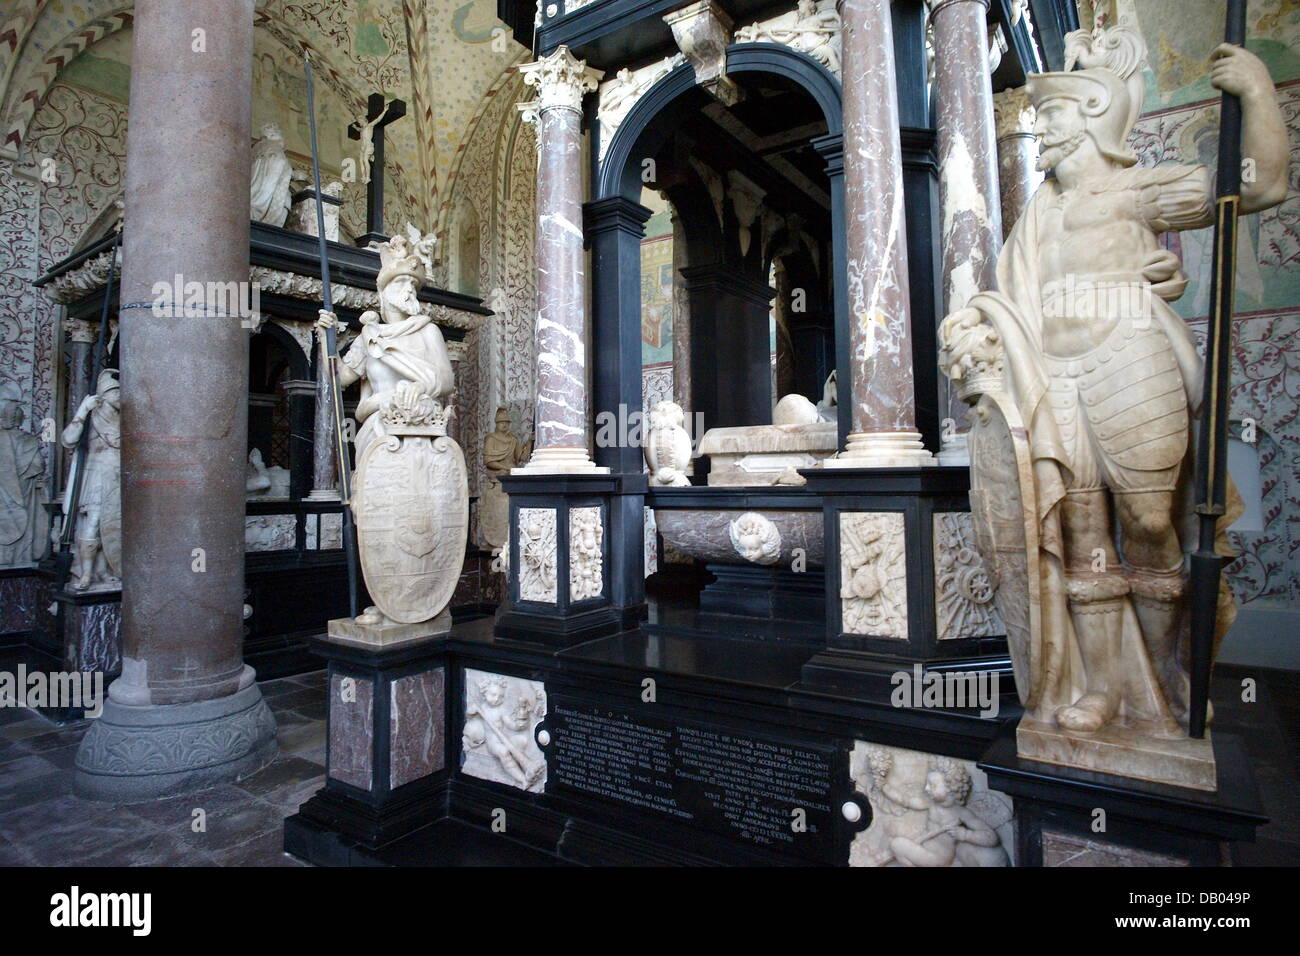 La foto mostra una tomba dentro la Cattedrale di Roskilde, Danimarca, il 23 maggio 2007. La cattedrale è stata dichiarata Patrimonio Culturale dell'Unesco nel 1995. Costruzione iniziata in stile romanico nel 1170 ed è stato continuato in stile gotico da 1200 in poi. 20 re danese e 17 Queens sono tumulate nella cattedrale. Foto: Maurizio Gambarini Foto Stock